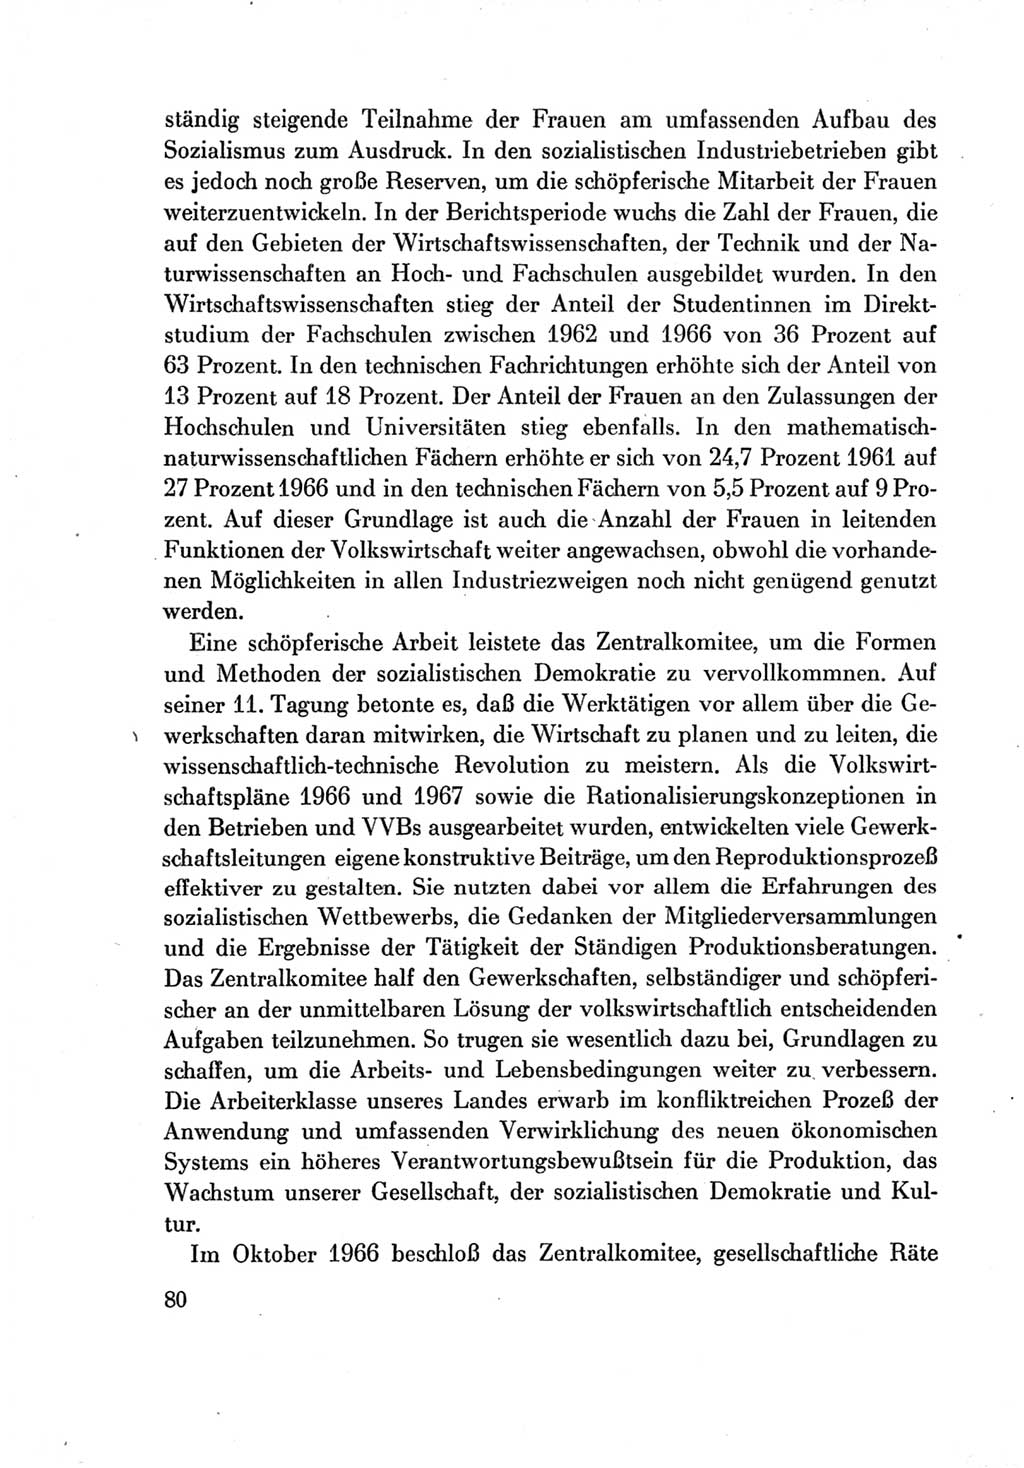 Protokoll der Verhandlungen des Ⅶ. Parteitages der Sozialistischen Einheitspartei Deutschlands (SED) [Deutsche Demokratische Republik (DDR)] 1967, Band Ⅳ, Seite 80 (Prot. Verh. Ⅶ. PT SED DDR 1967, Bd. Ⅳ, S. 80)